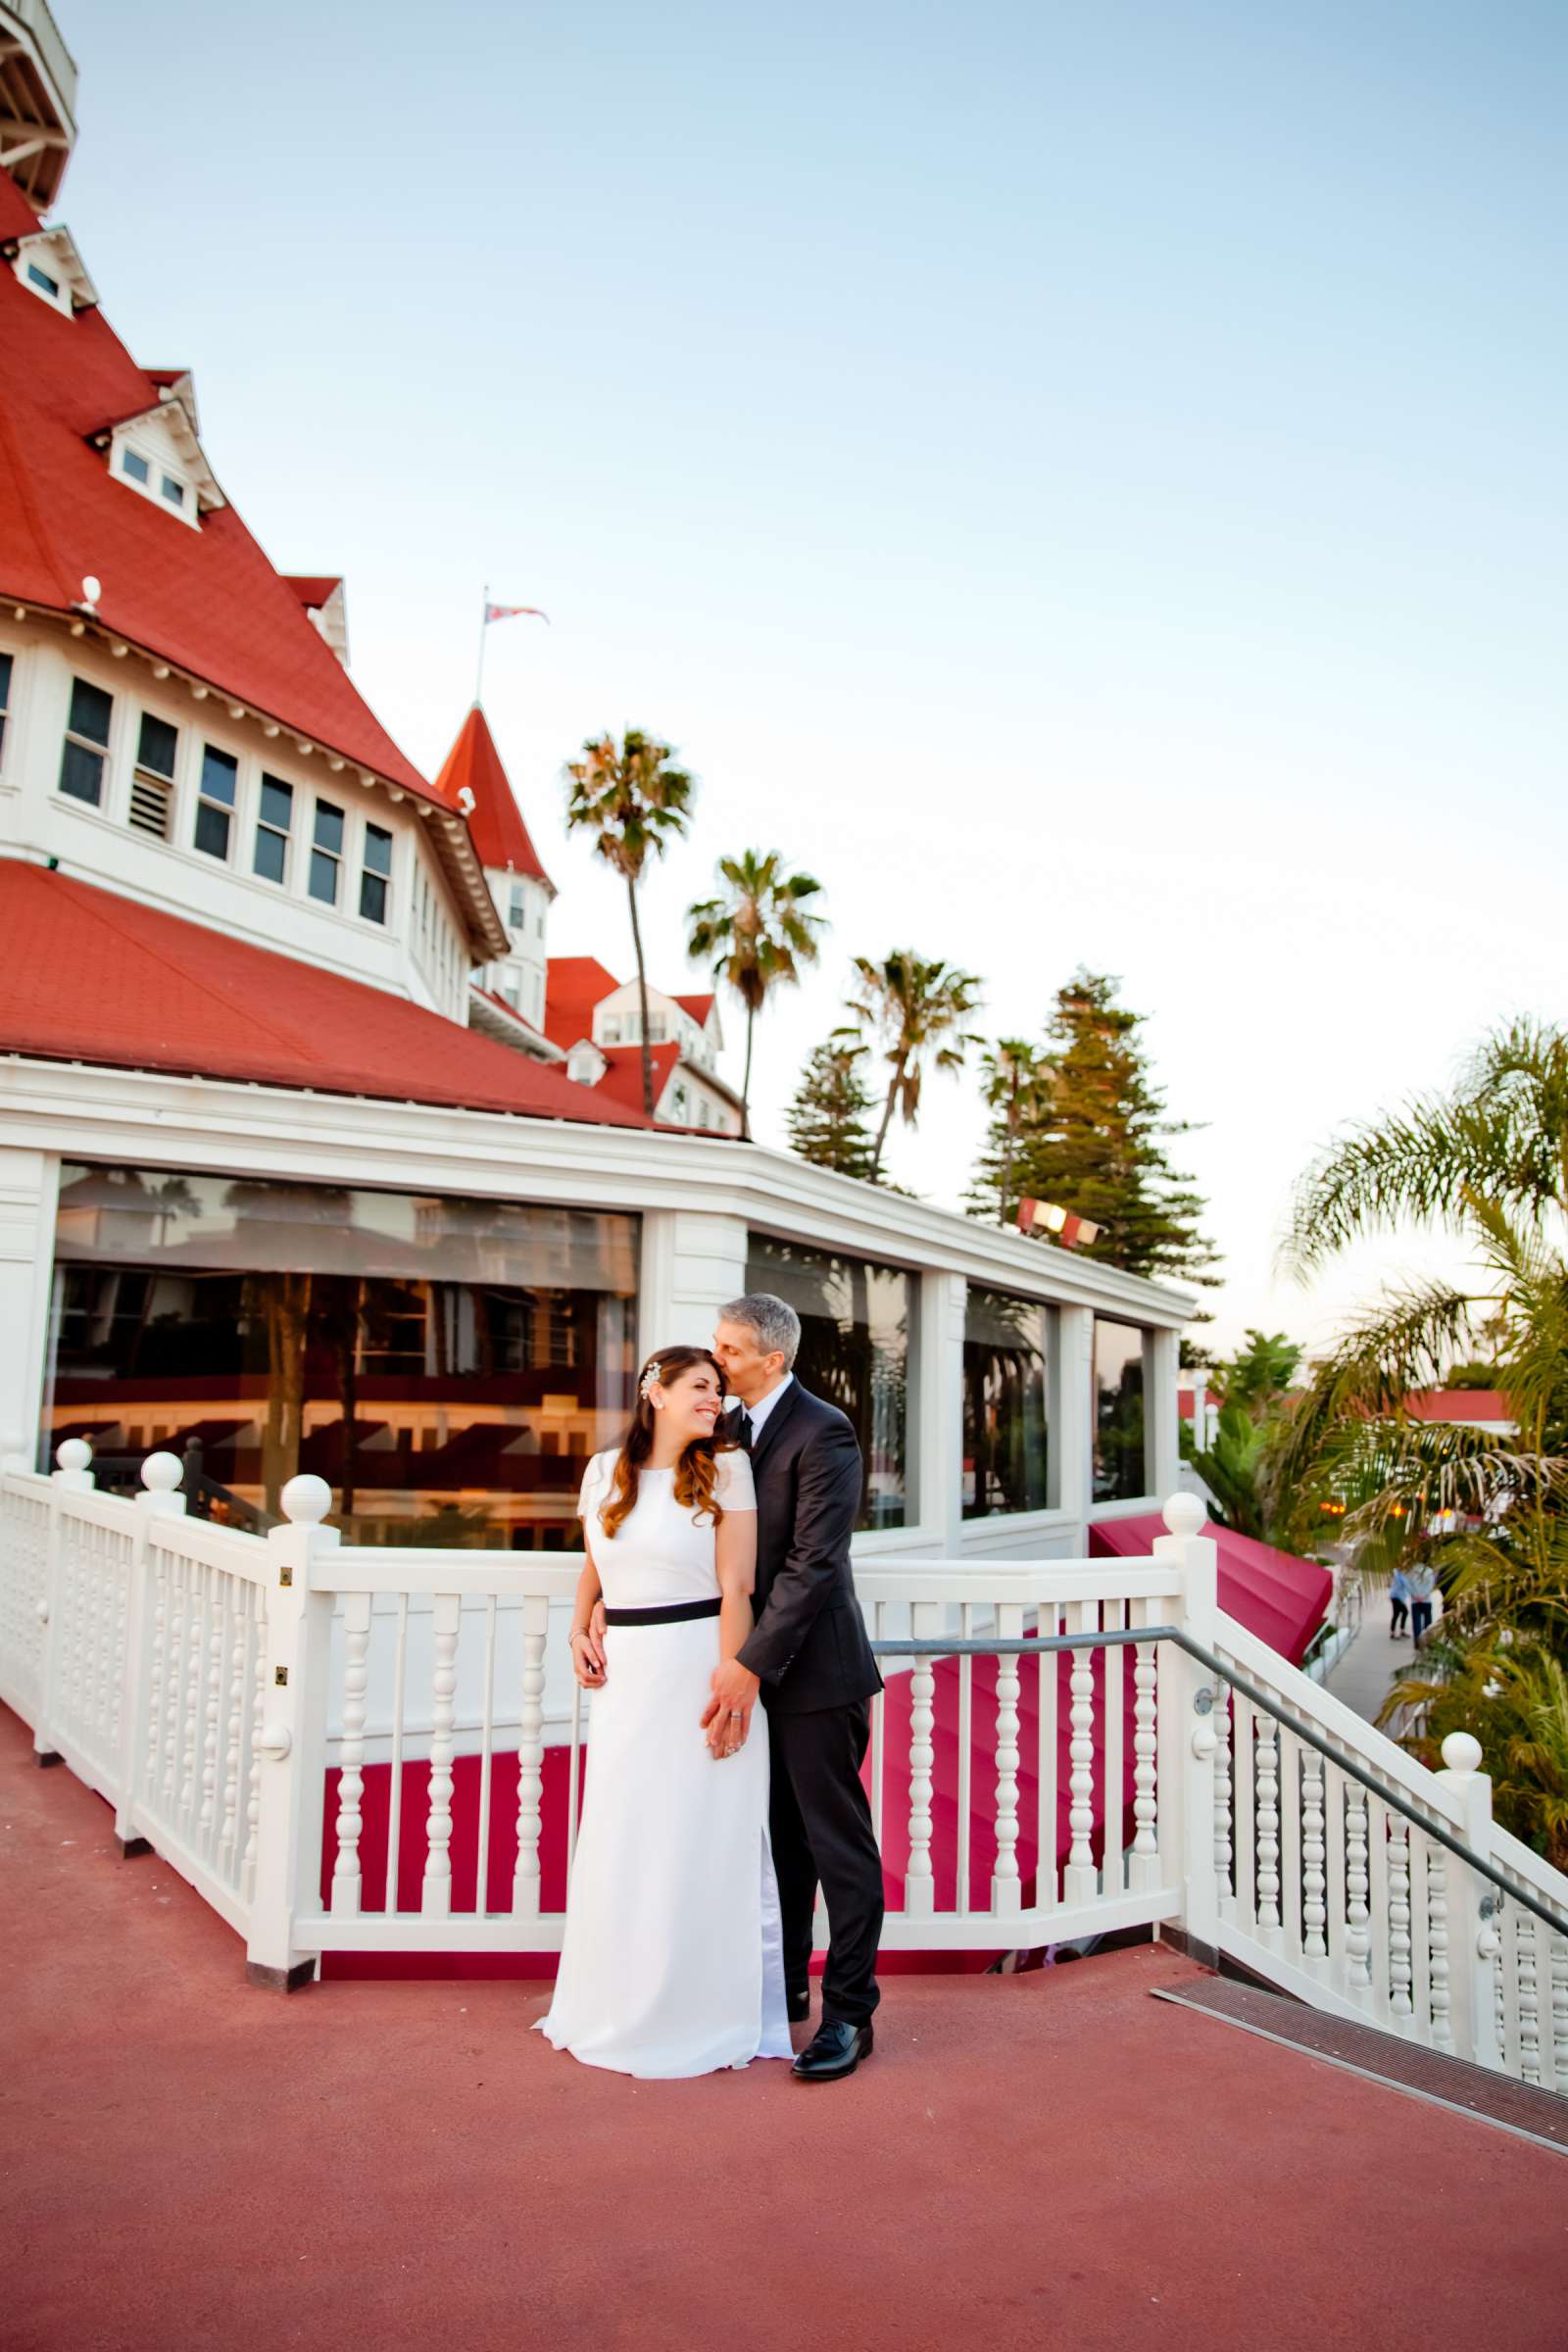 Hotel Del Coronado Wedding, Melis and Marc Wedding Photo #6 by True Photography